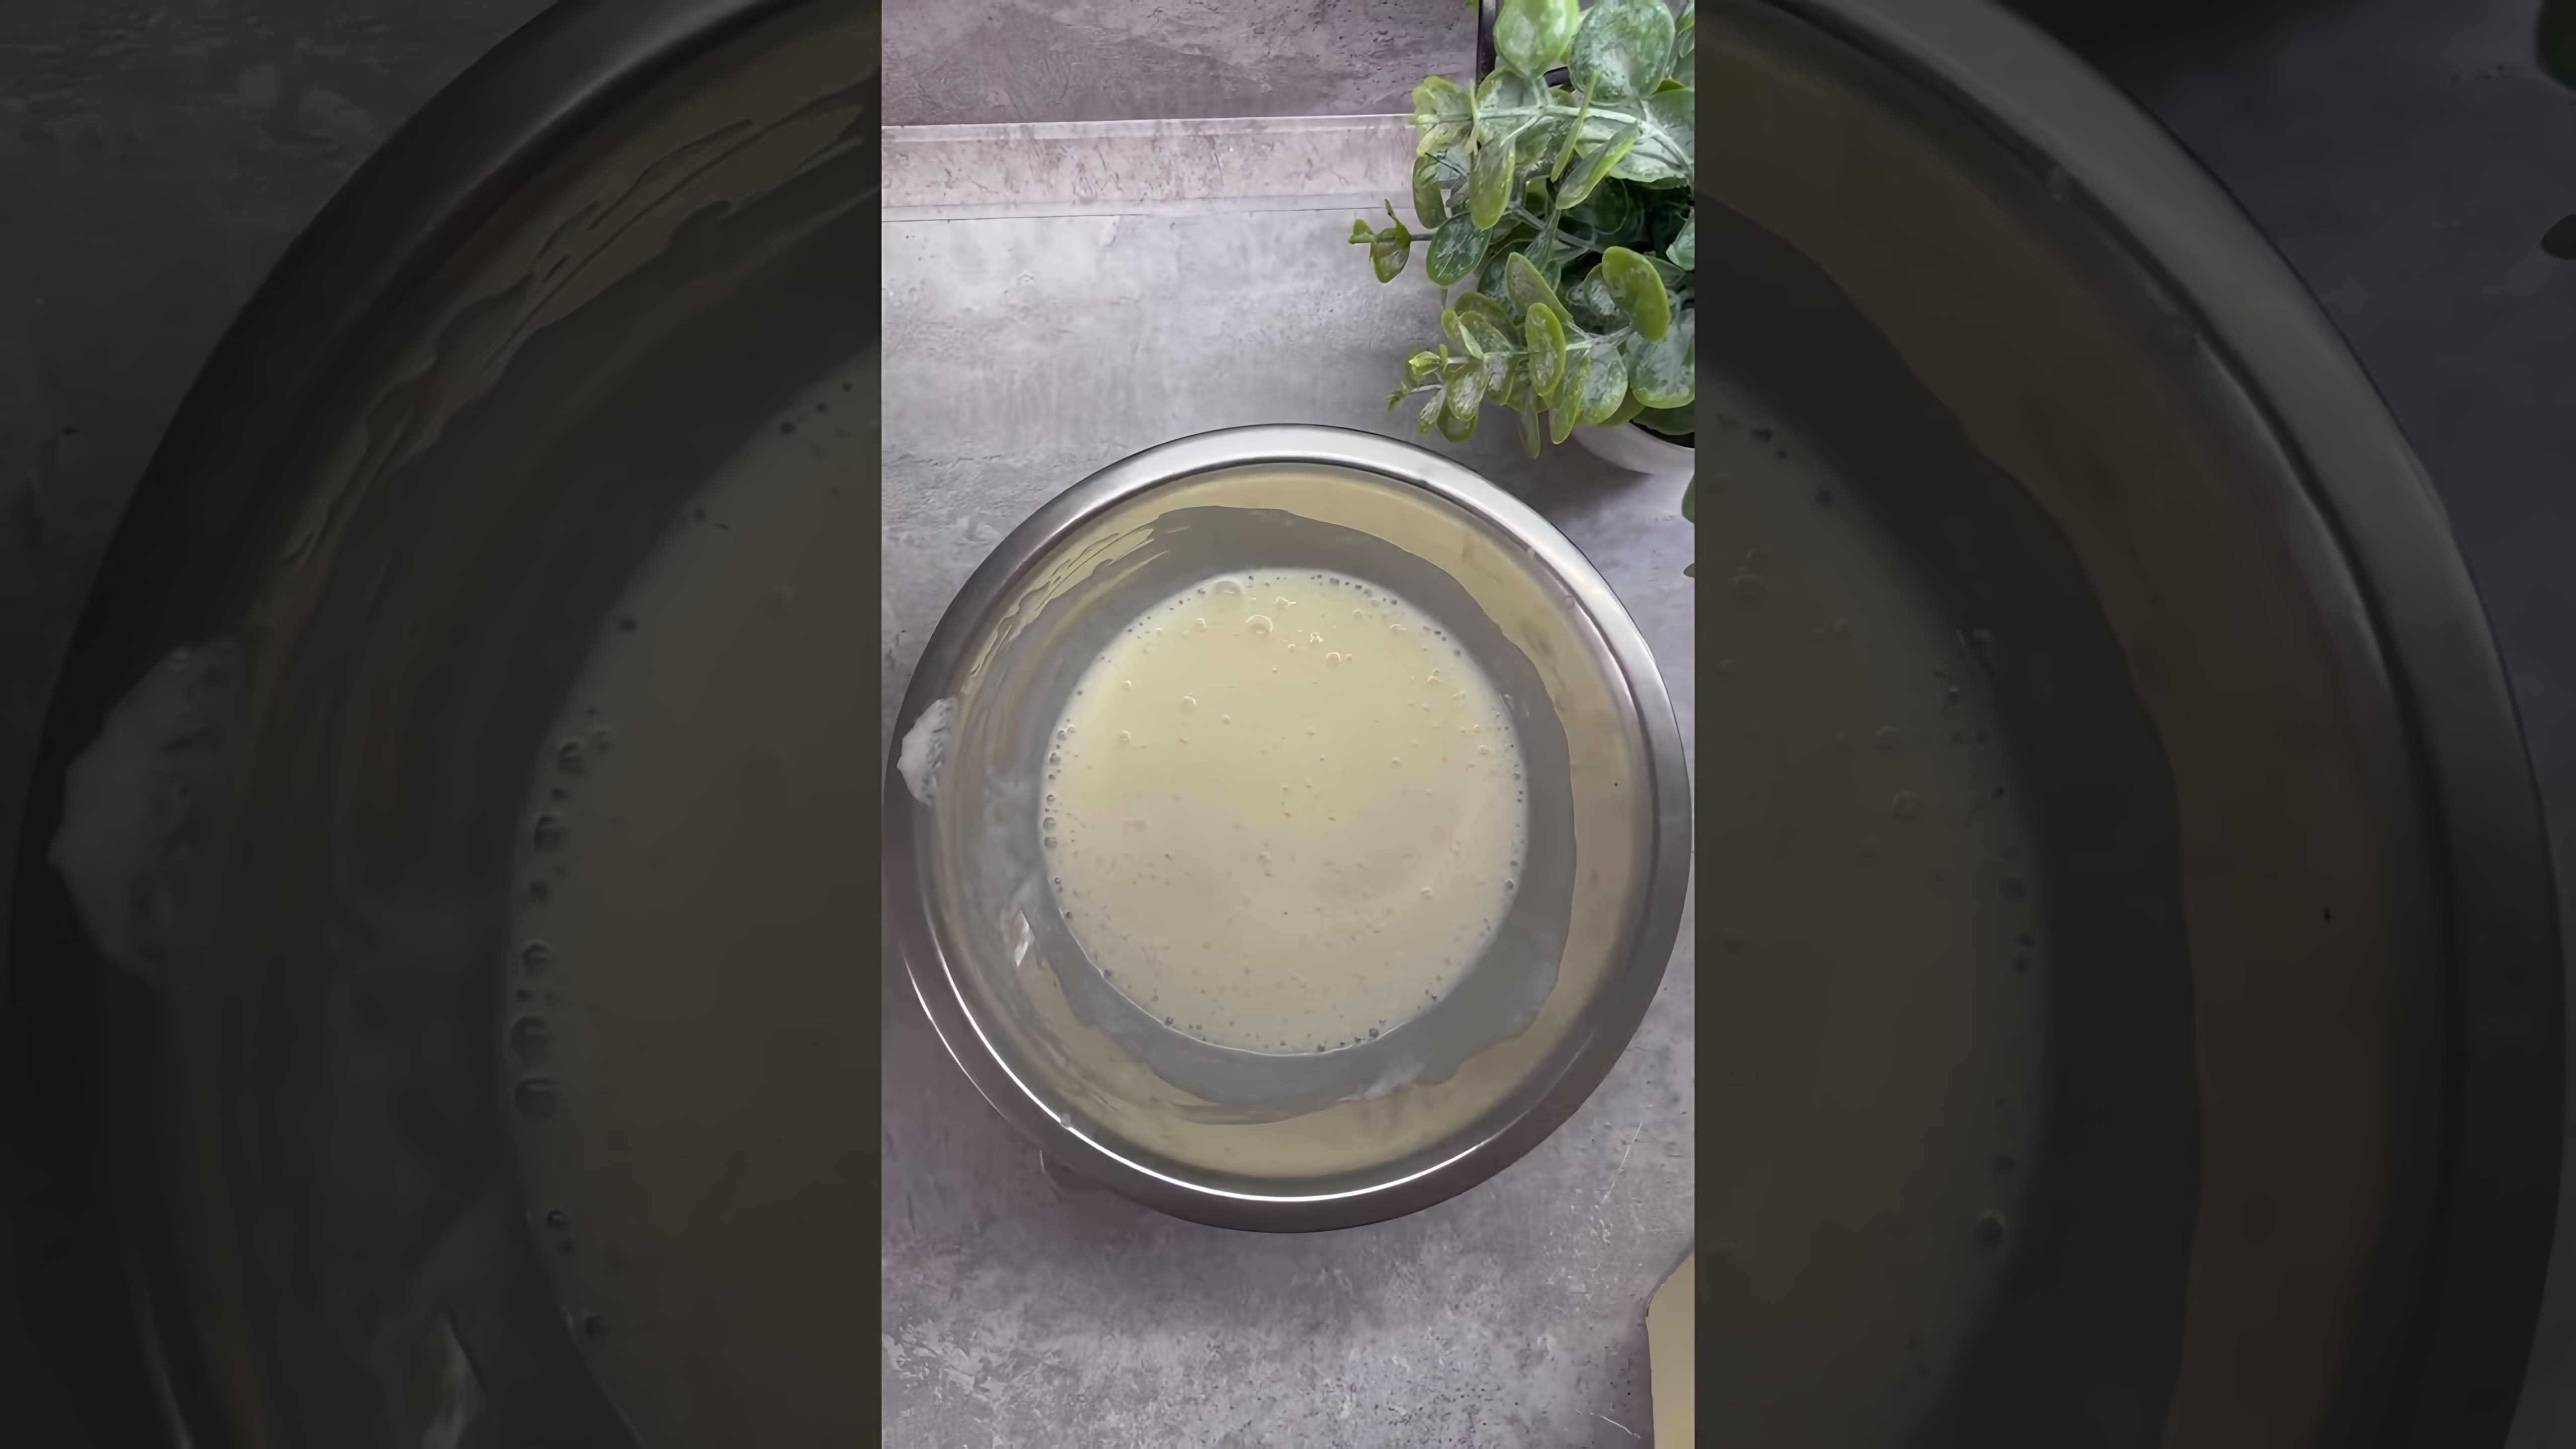 В этом видео демонстрируется процесс приготовления пышных и вкусных оладушек по маминому рецепту